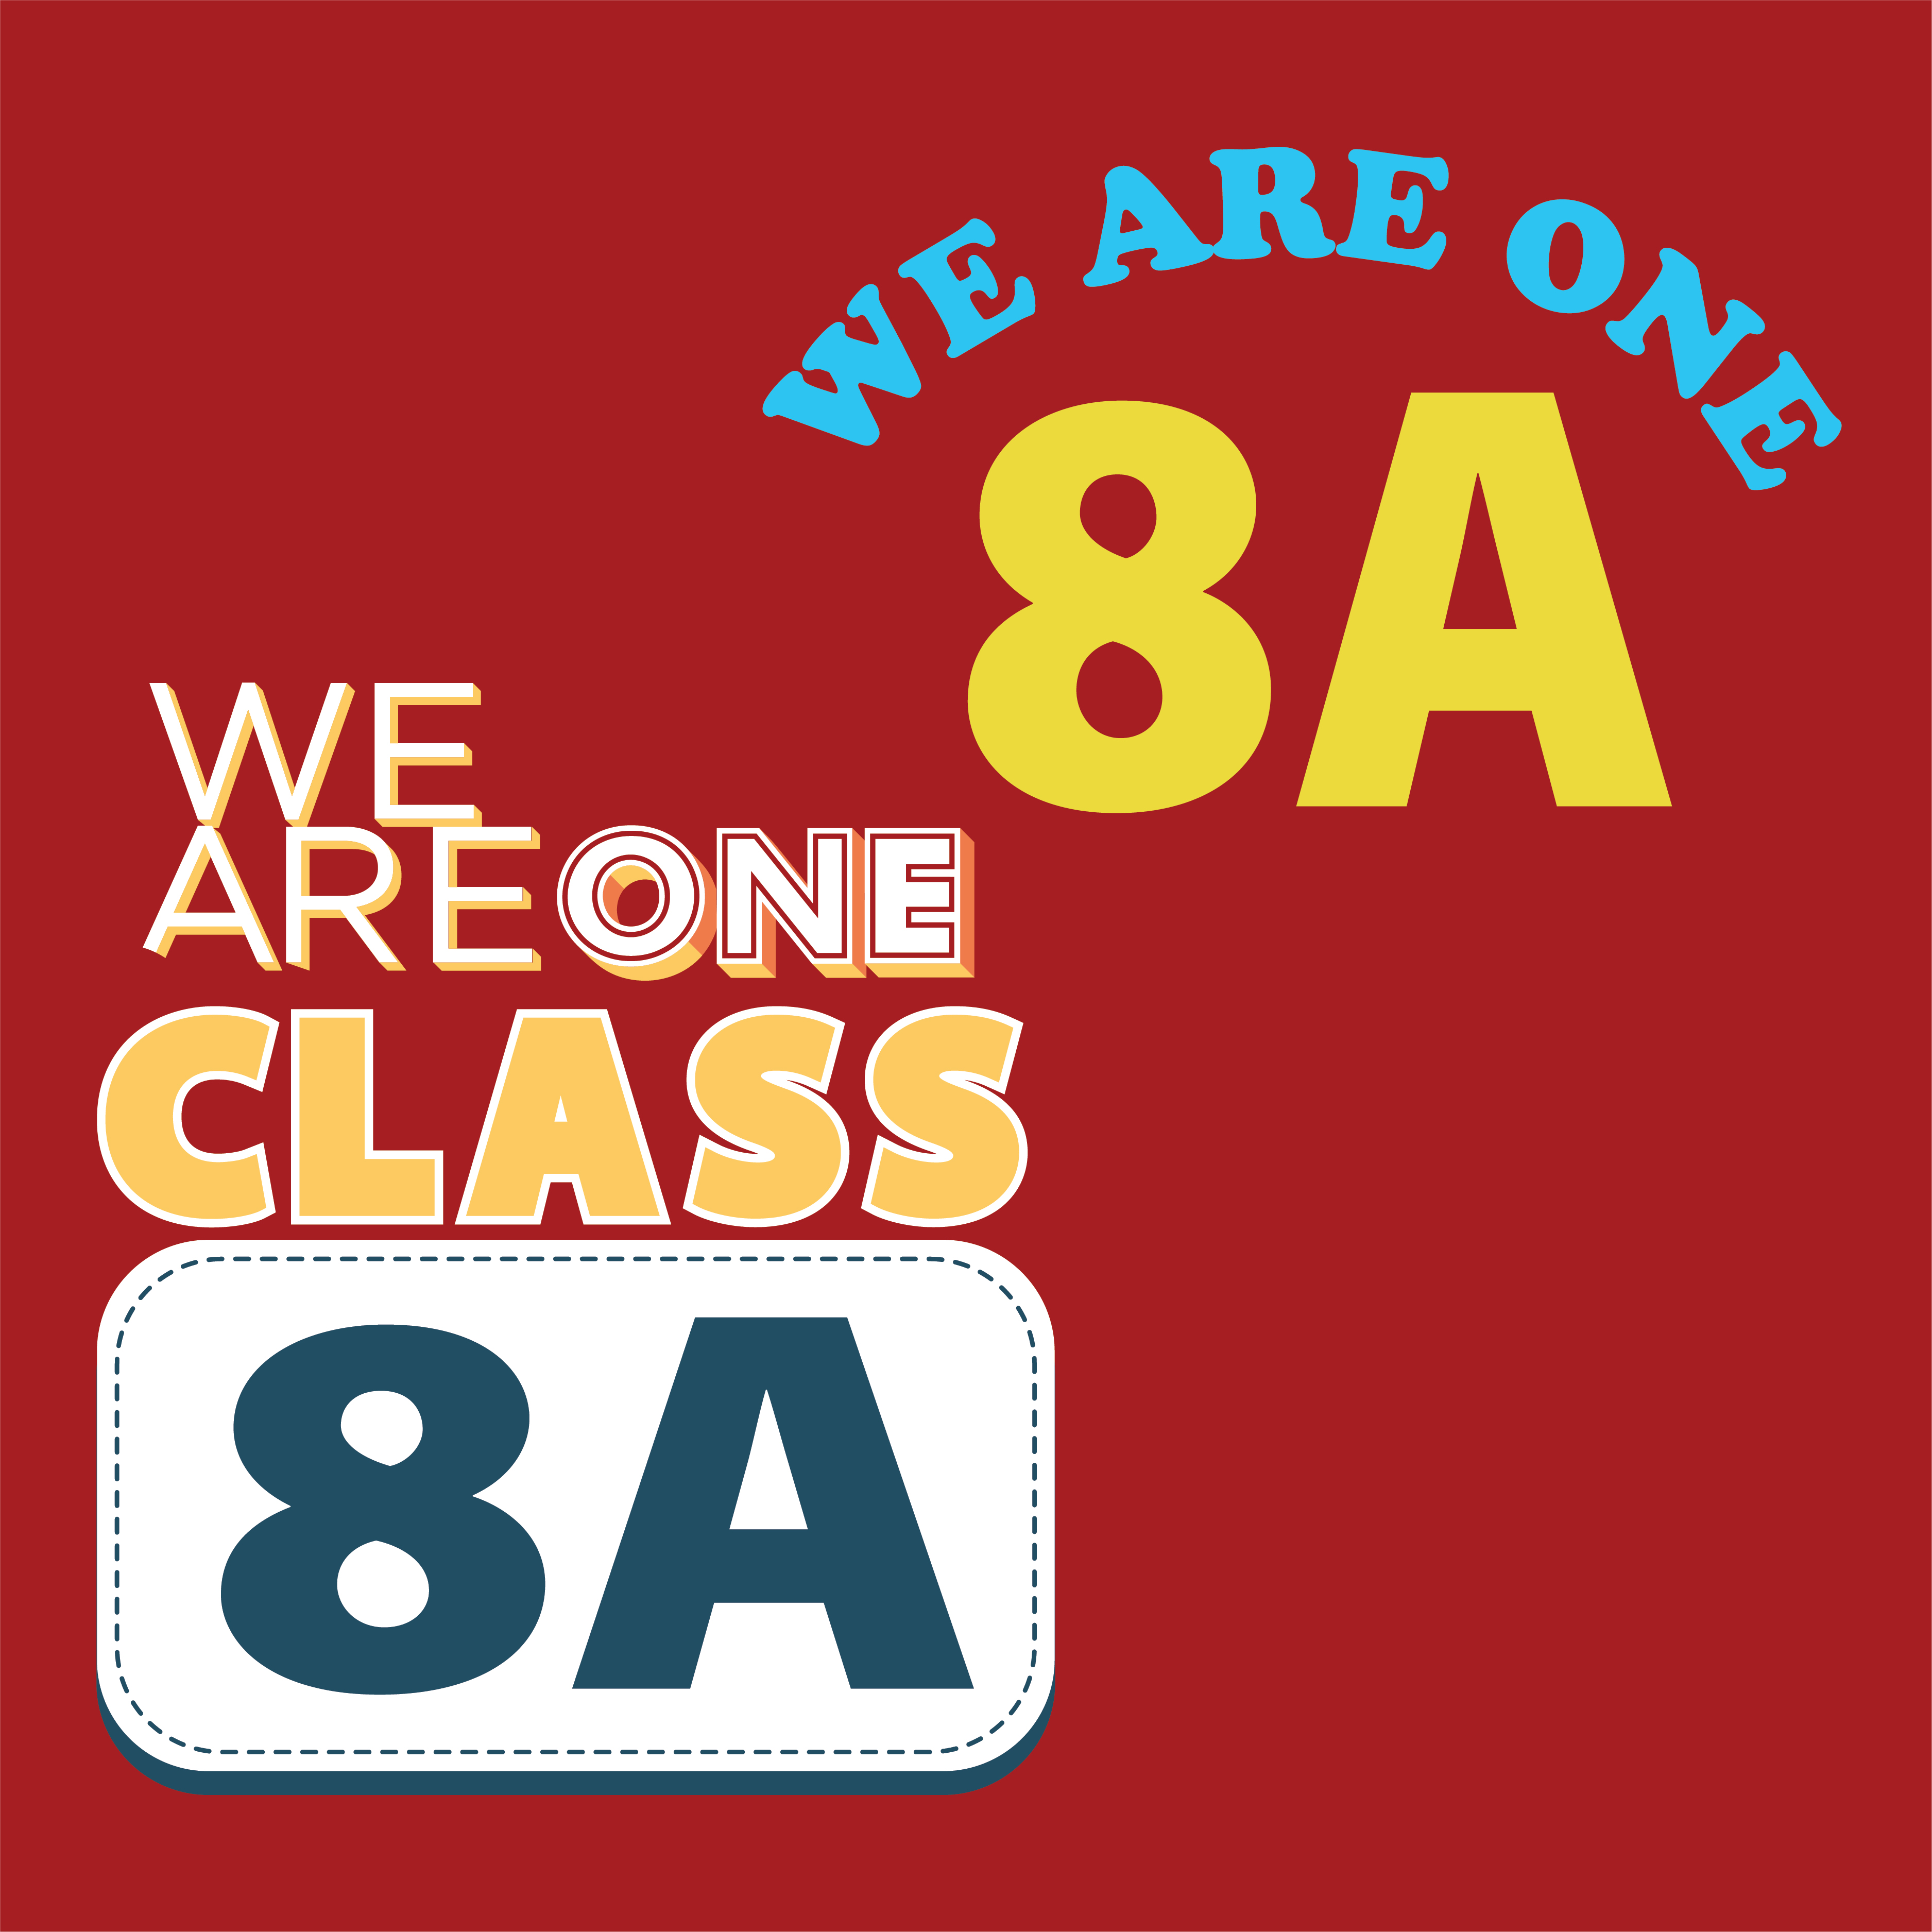 Top 99 avatar nhóm lớp 8a được xem và download nhiều nhất